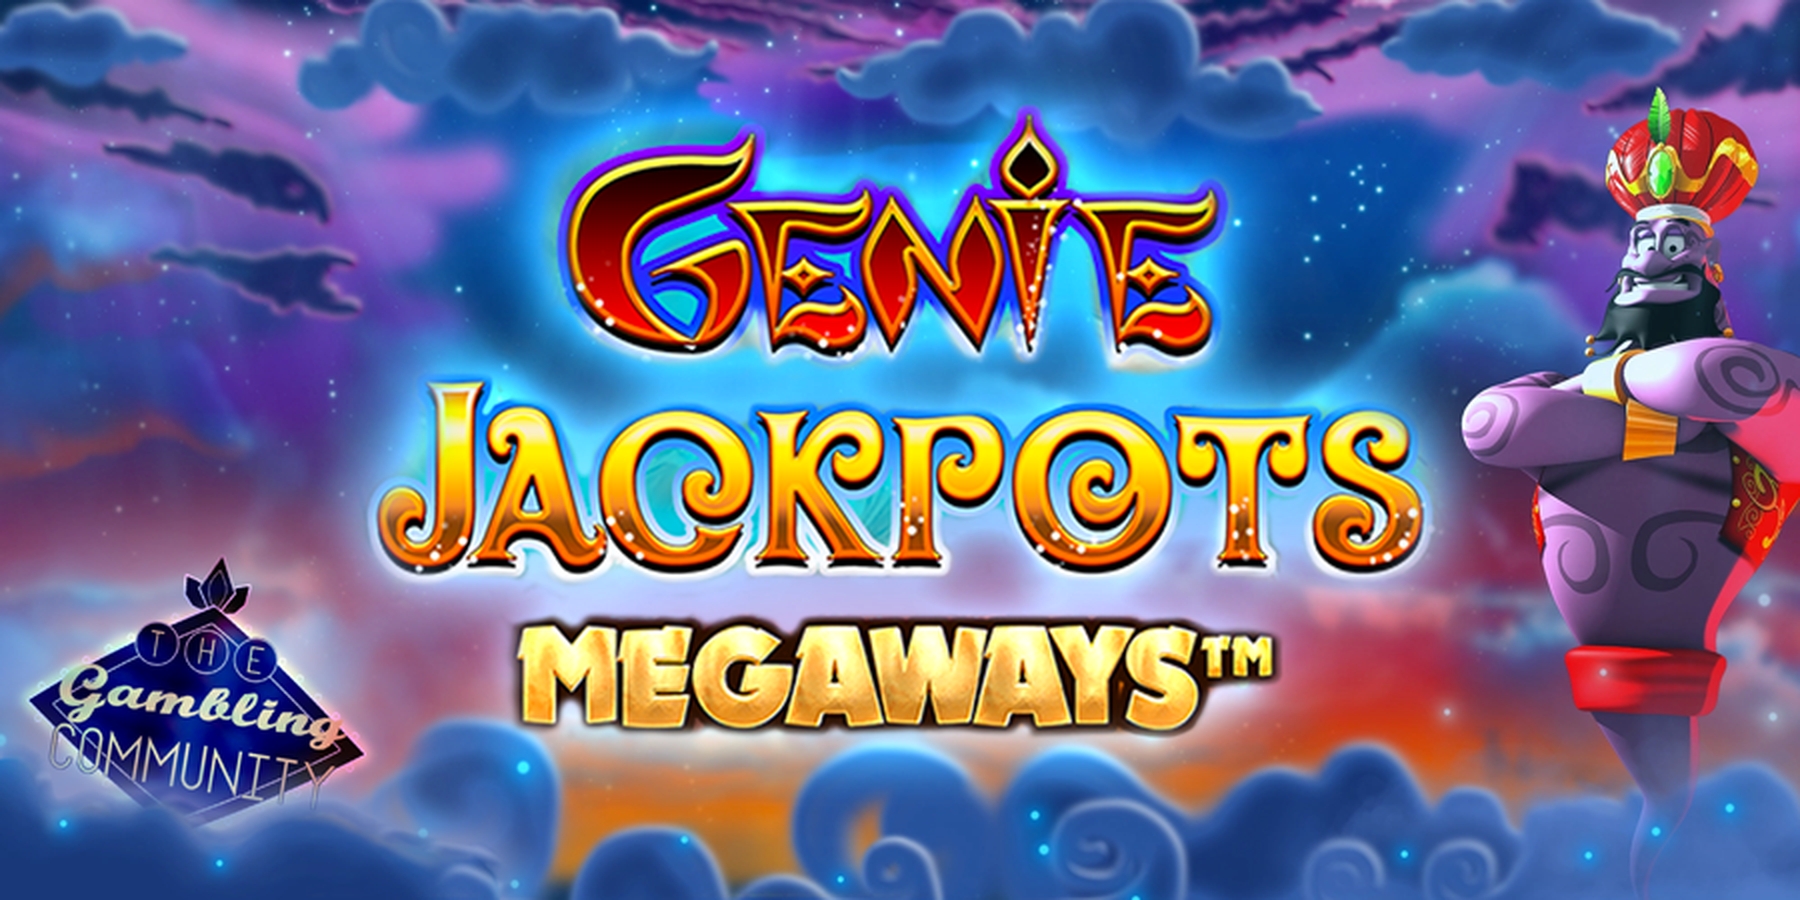 Genie Jackpots Megaways demo